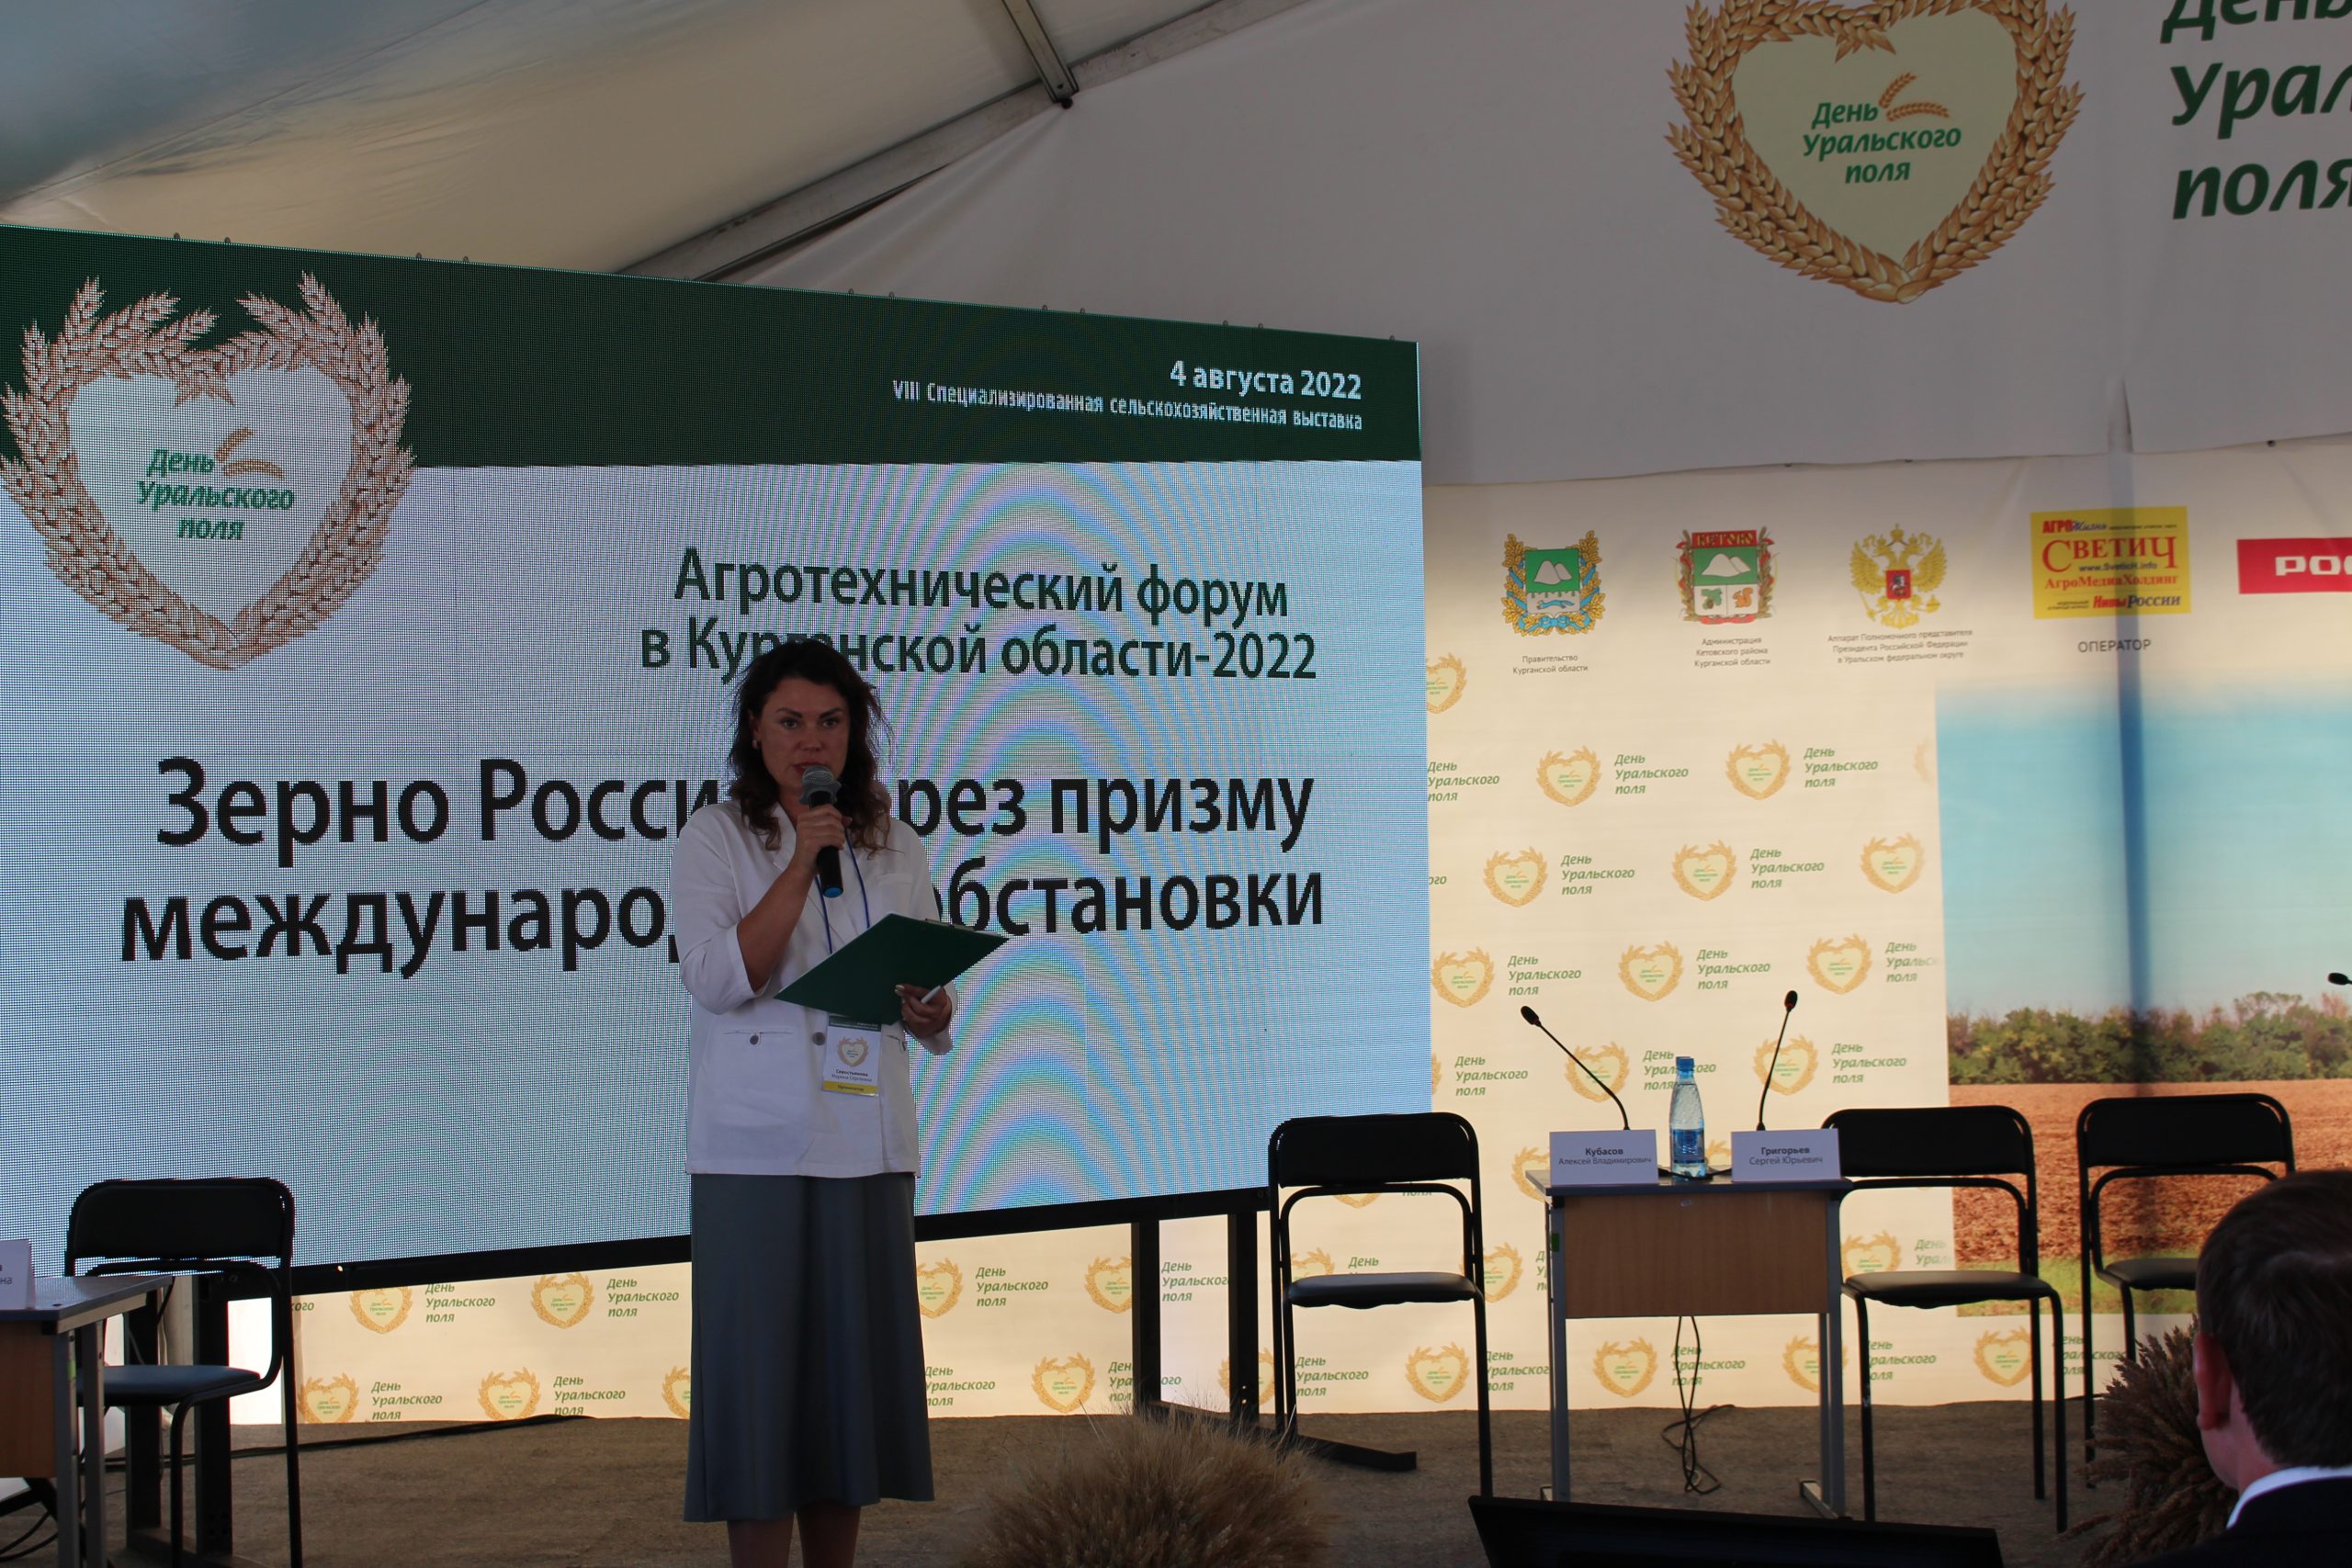 В «День Уральского поля-2023» состоится Агротехнический форум